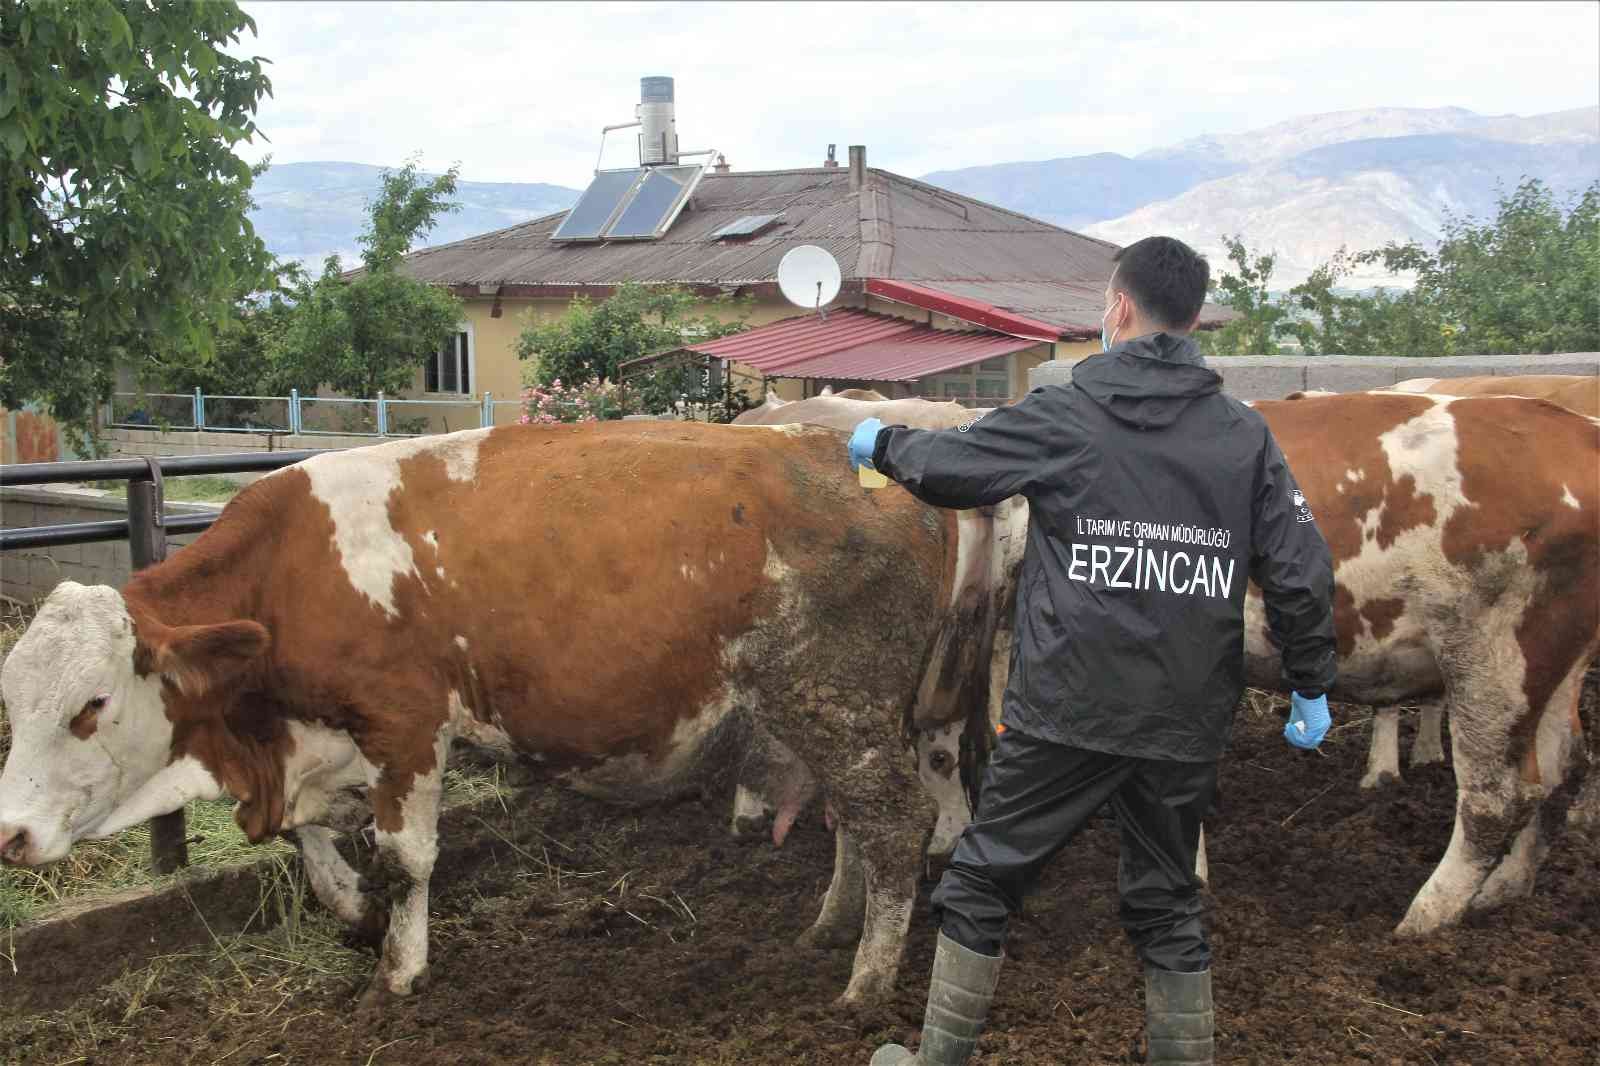 Erzincan’da salgın hastalıklara karşı hayvan aşılamaları sürüyor #erzincan